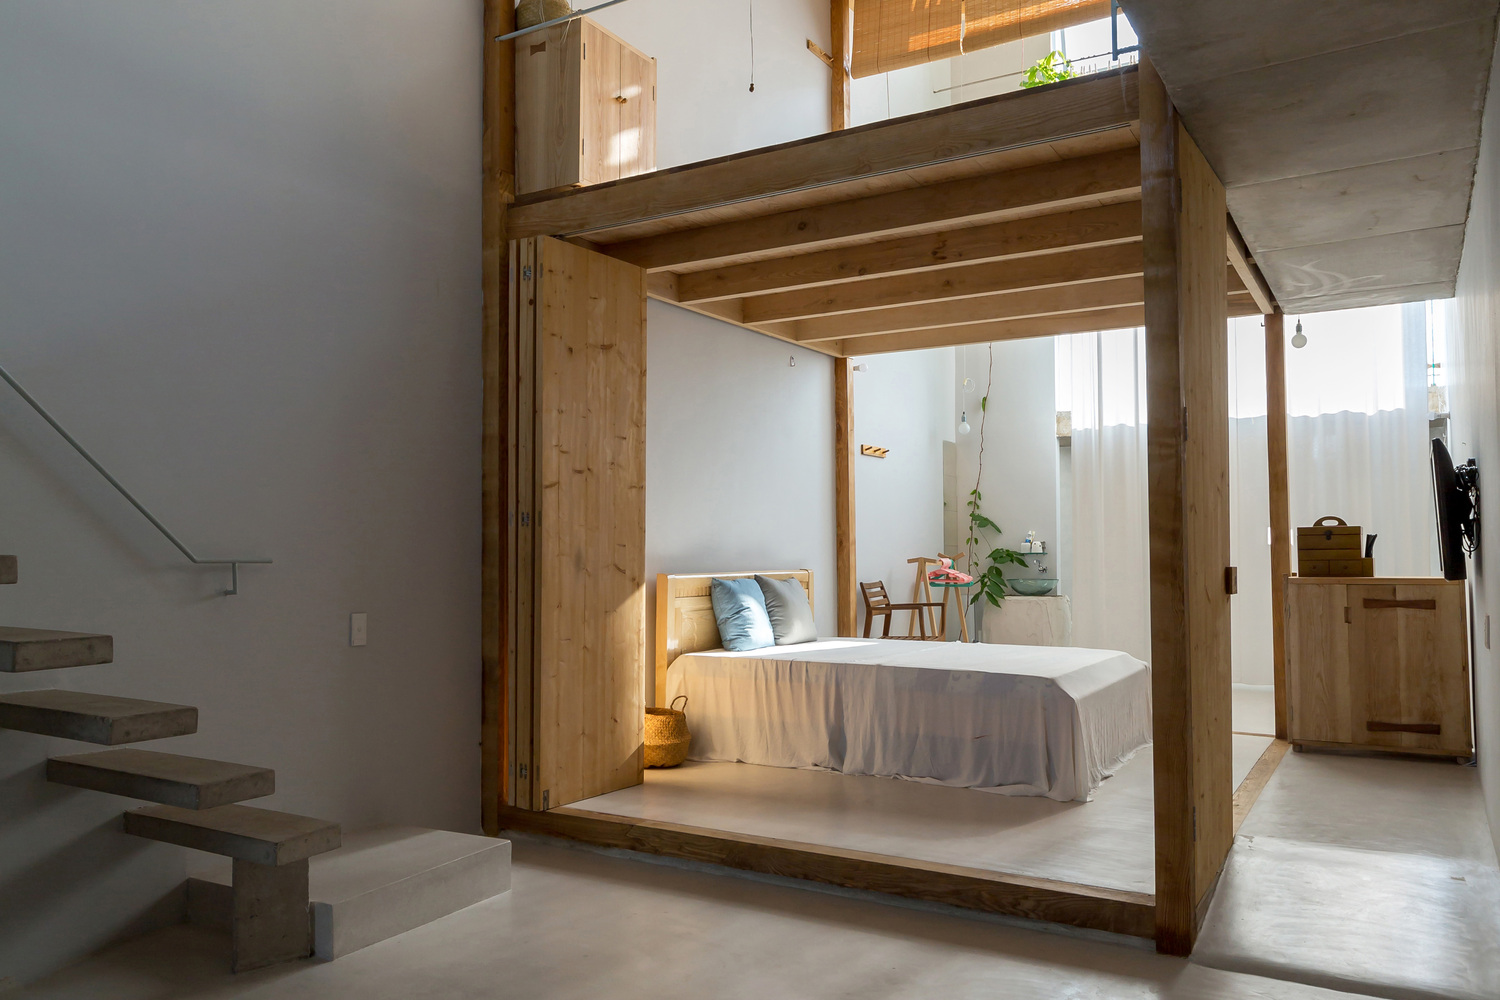 phòng ngủ ở tầng trệt nhà 2 tầng với thiết kế nội thất đơn giản, gỗ chủ đạo